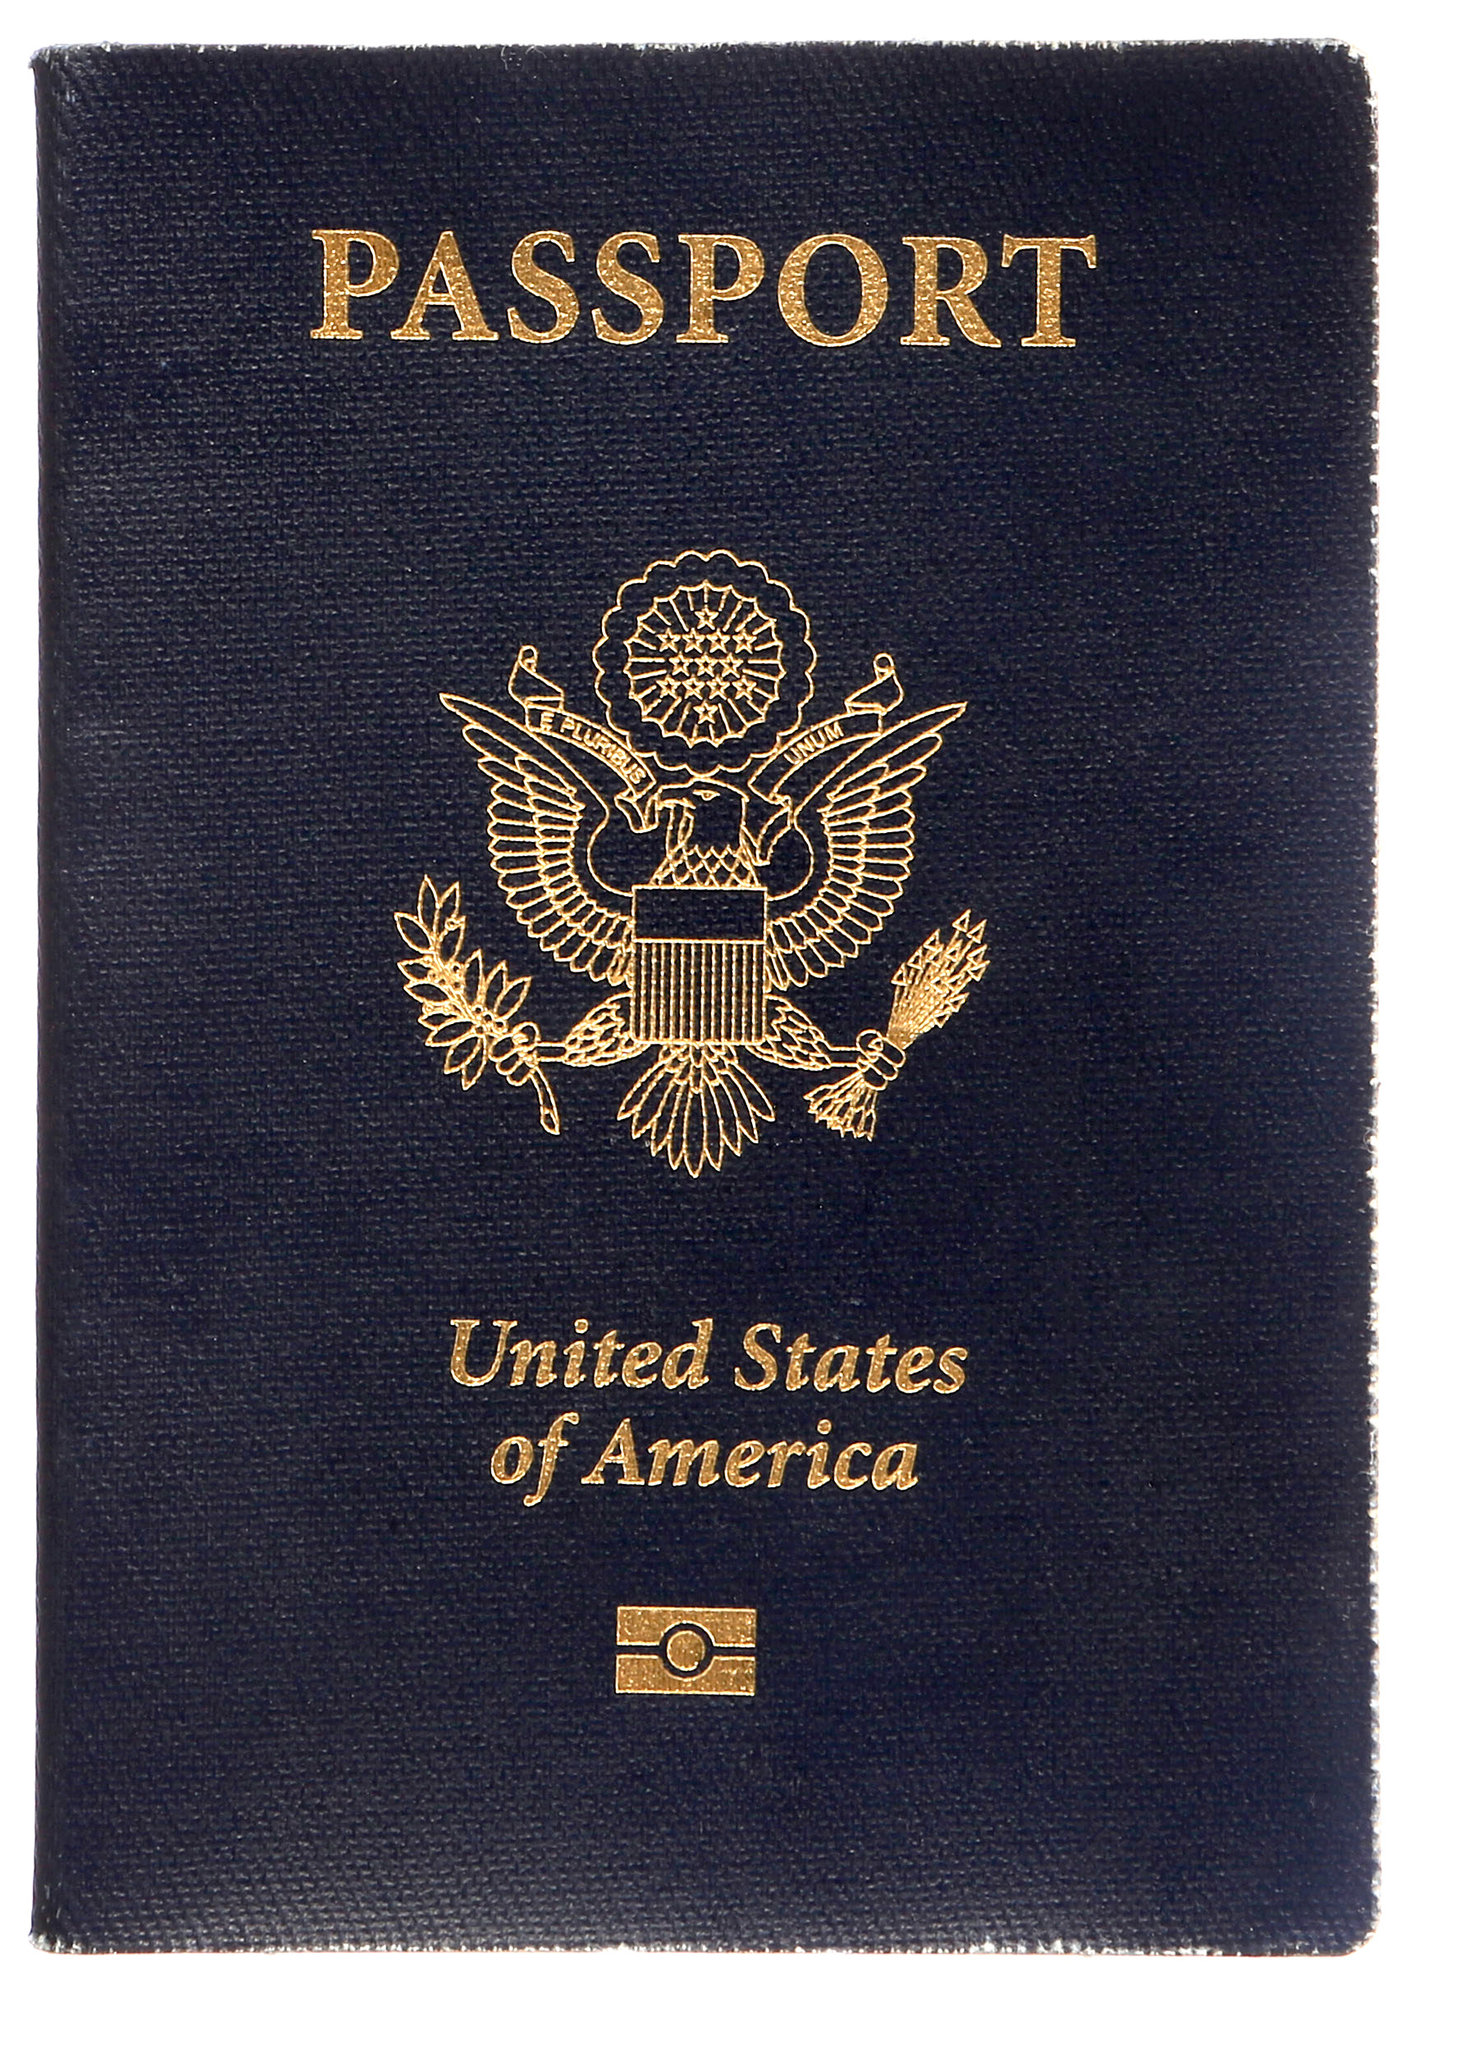 depart of passport